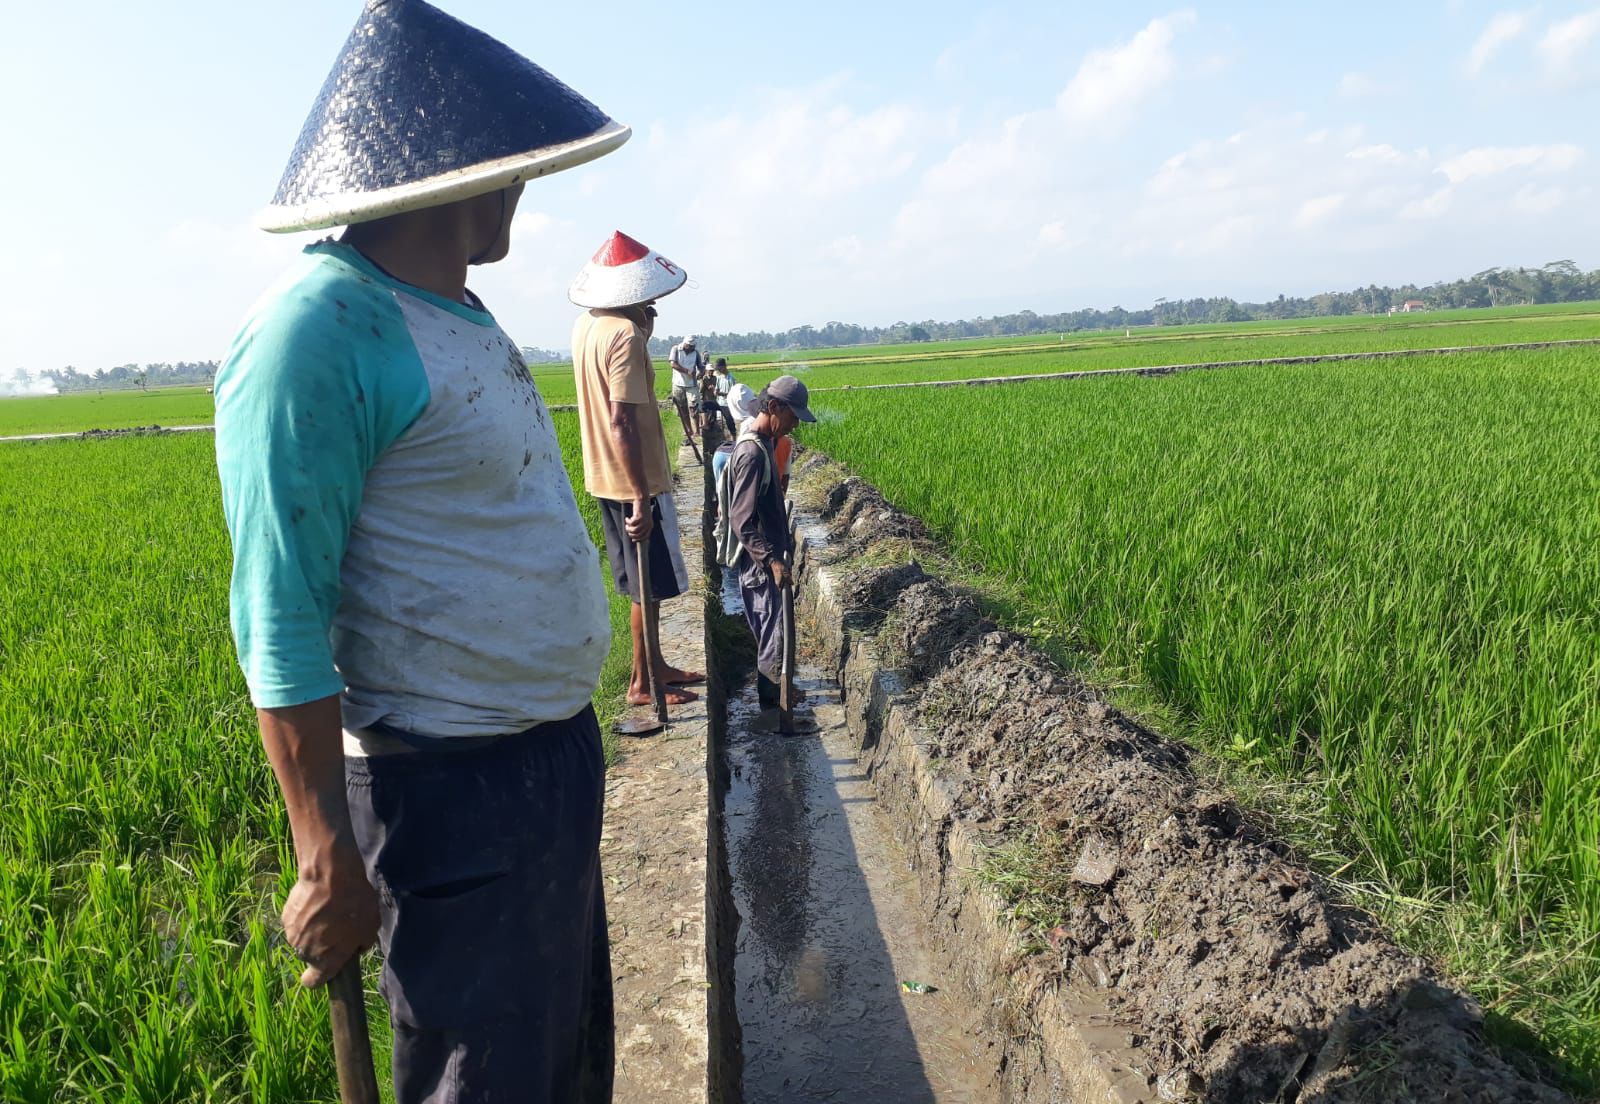 Petani di Kota Banjar, Jawa Barat menormalisasi saluran air untuk mengairi sawah mereka pada musim kemarau ini.